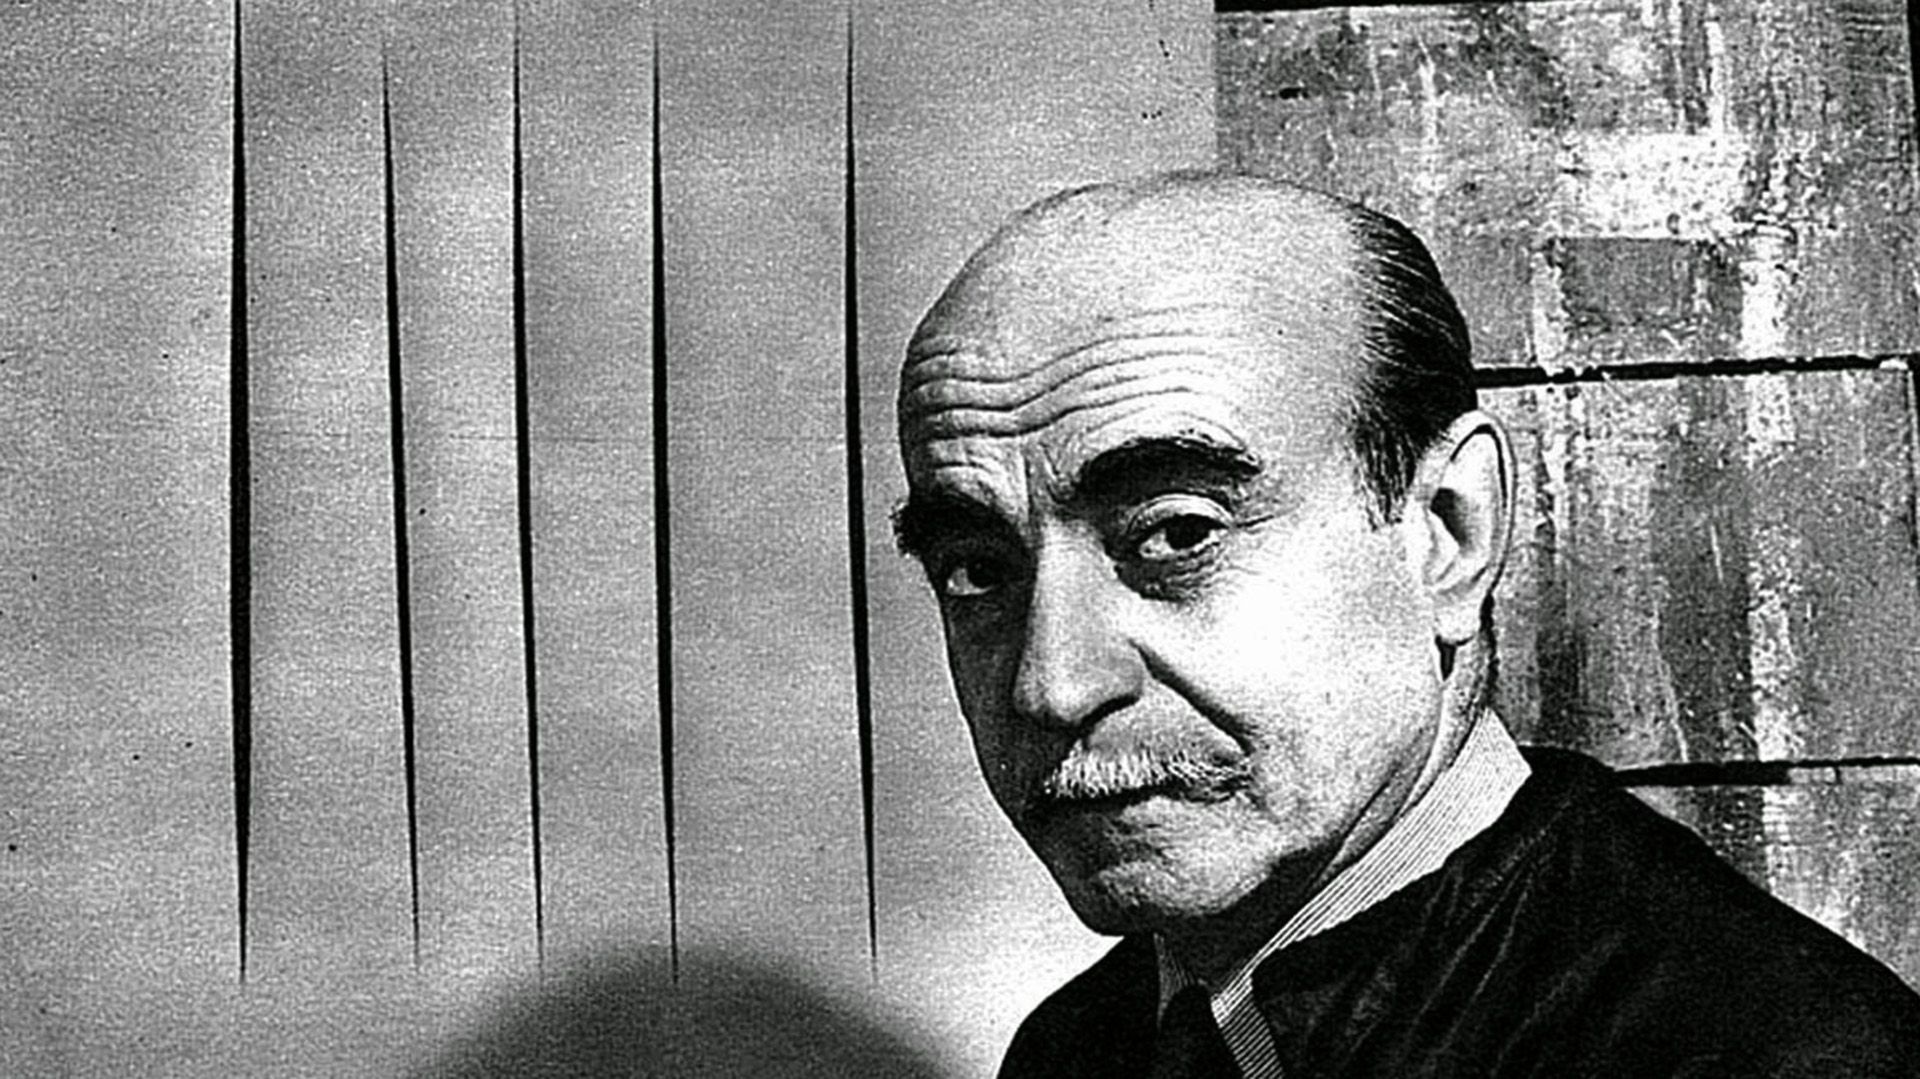 El artista argentino Lucio Fontana (1899-1968), pionero del espacialismo